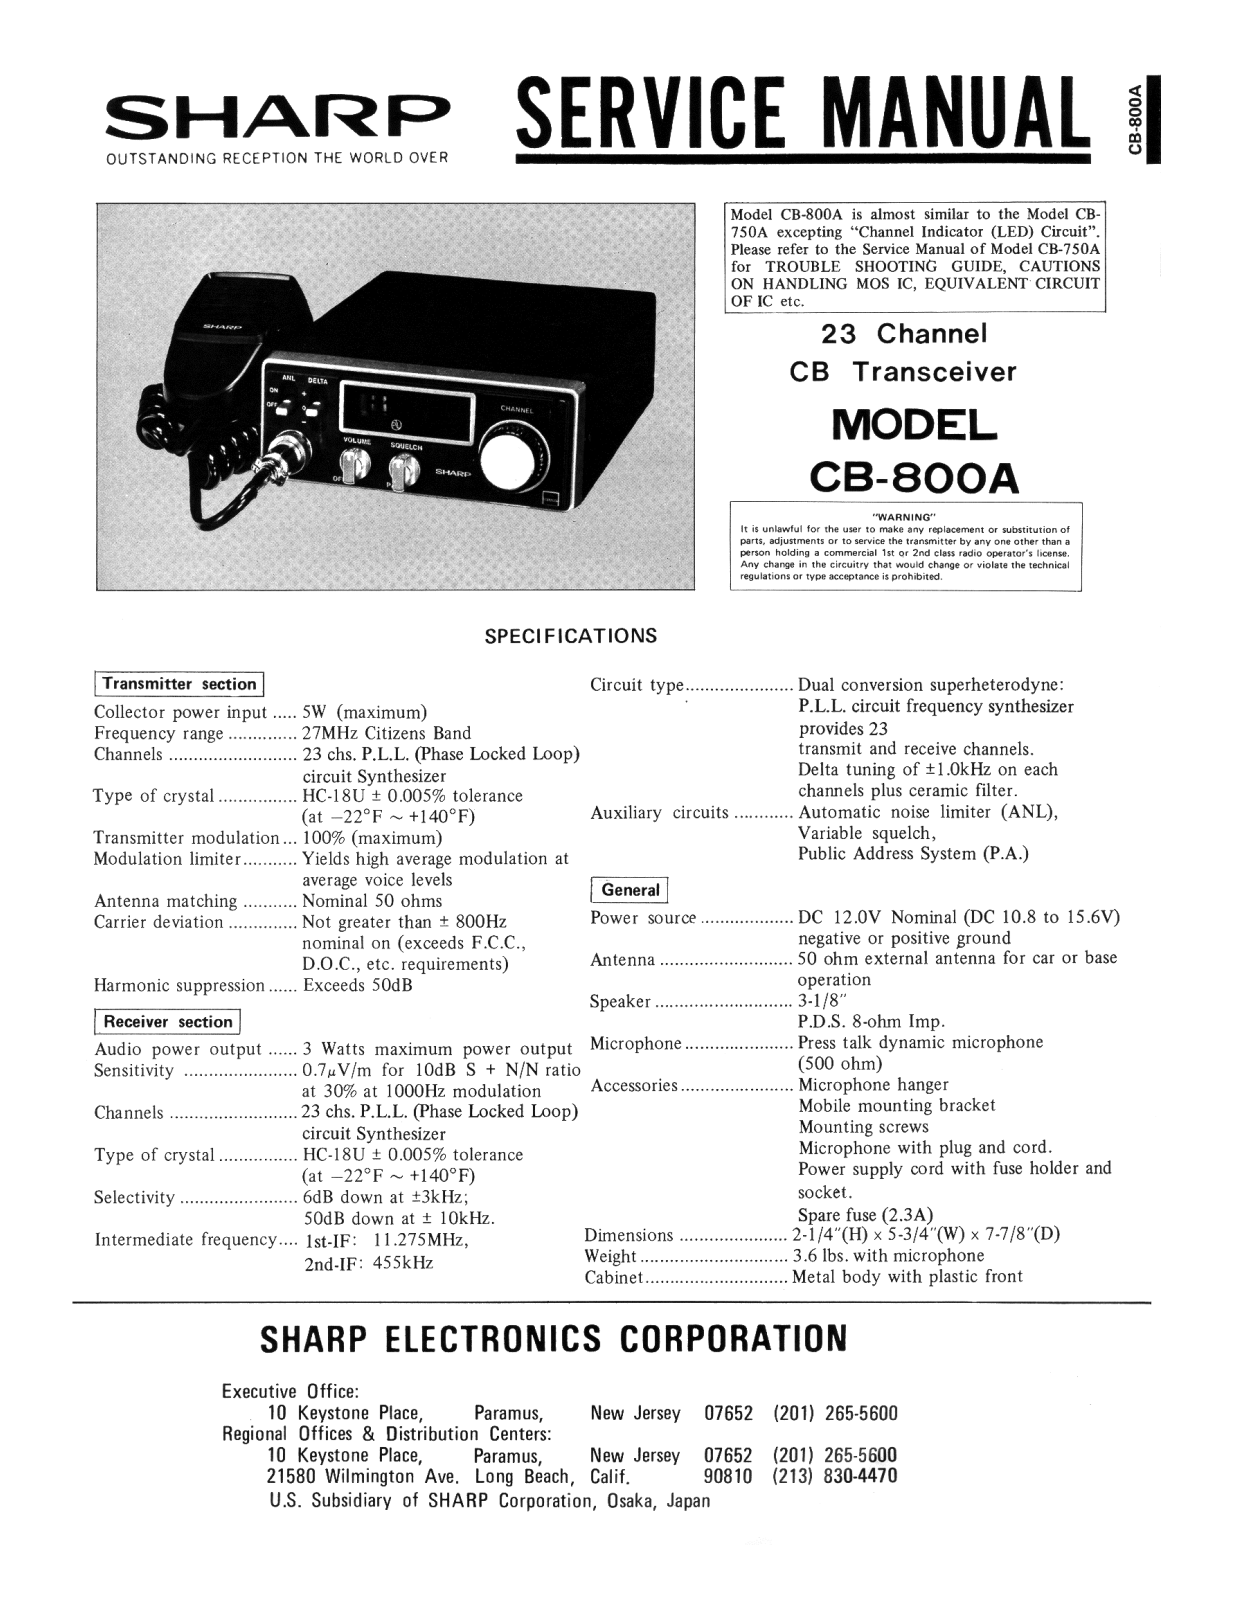 Sharp CB-800A Service Manual